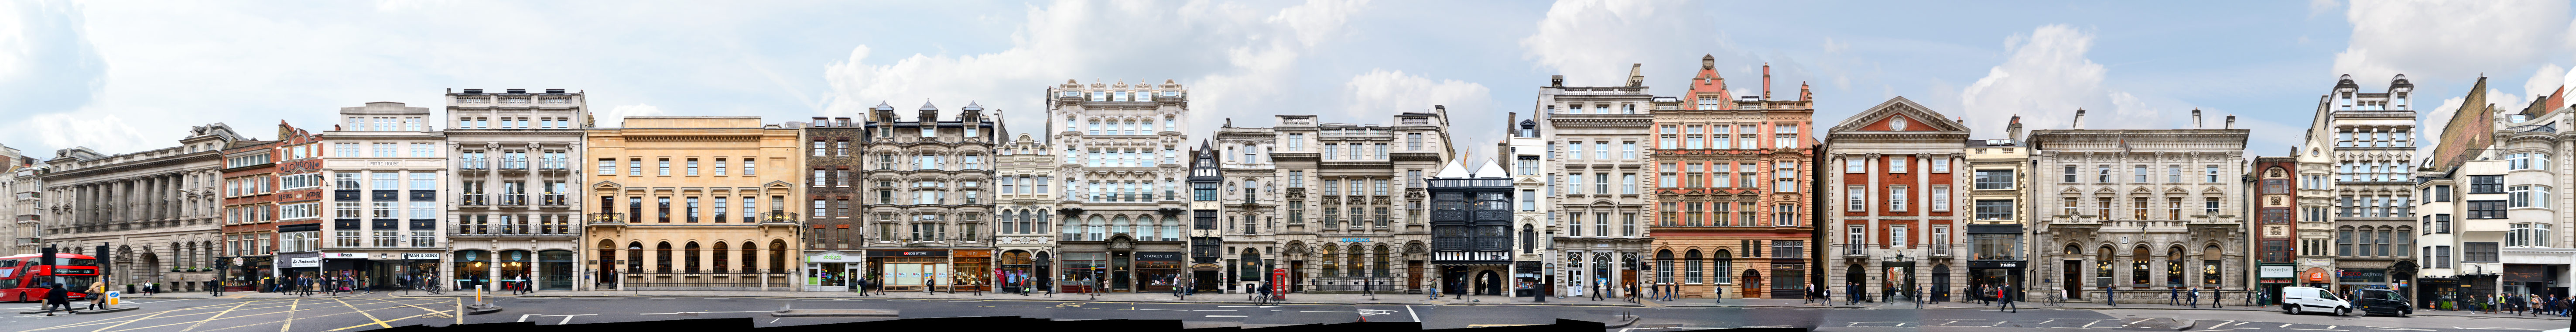 London Fleet Street Architecture street front